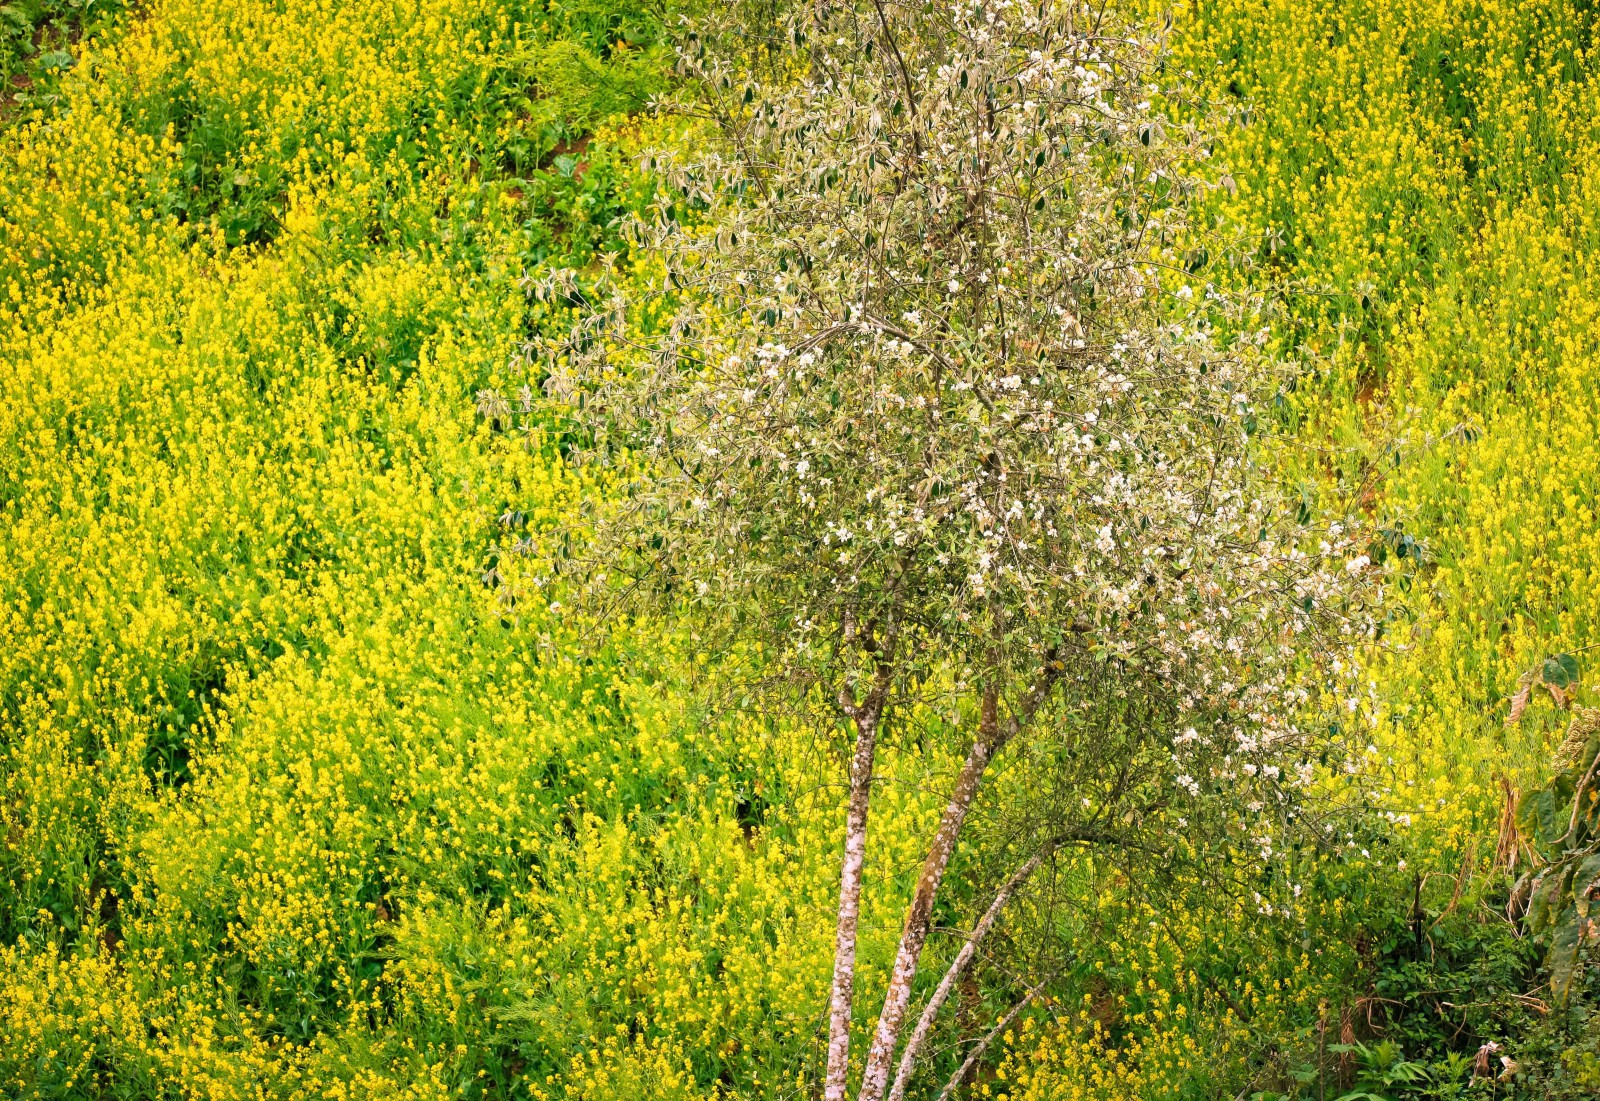 … và cũng là thời điểm những vườn cải vàng của bà con dân tộc Mông ở Xím Vàng nở hoa vàng rực, làm nền cho cây táo mèo đơm hoa trong vườn, tạo nên bức tranh đẹp đa sắc nơi miền sơn cước.